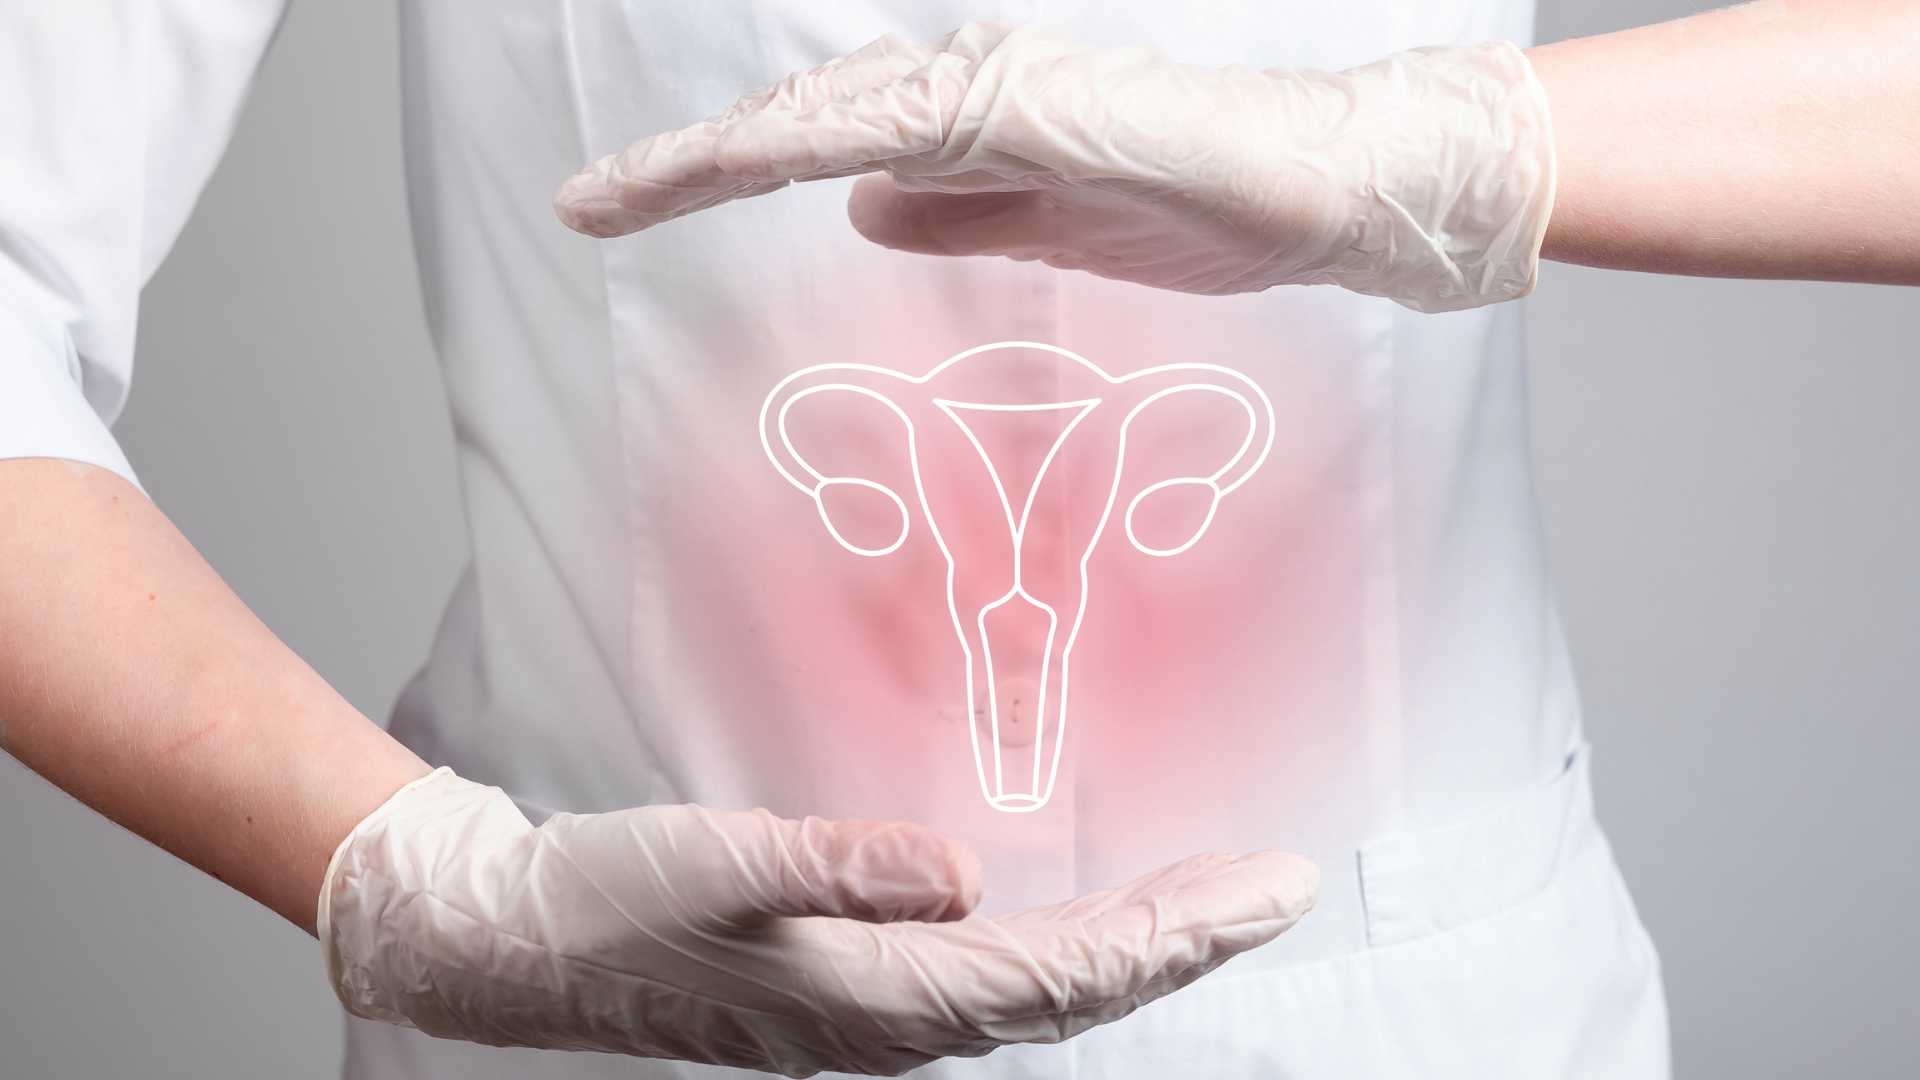 Endometrio Engrosado: Causas, Síntomas y Tratamiento